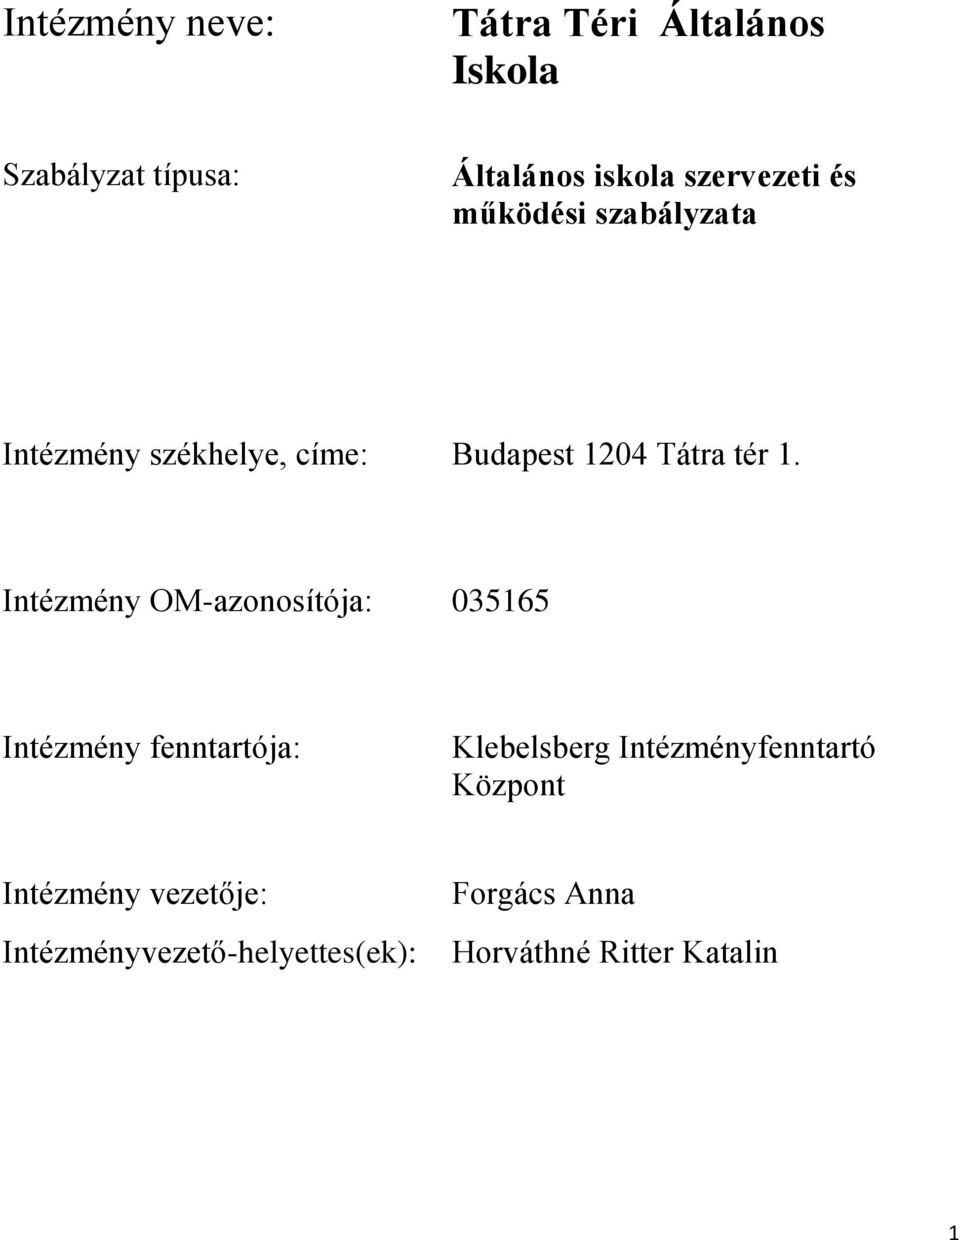 Intézmény OM-azonosítója: 035165 Intézmény fenntartója: Klebelsberg Intézményfenntartó